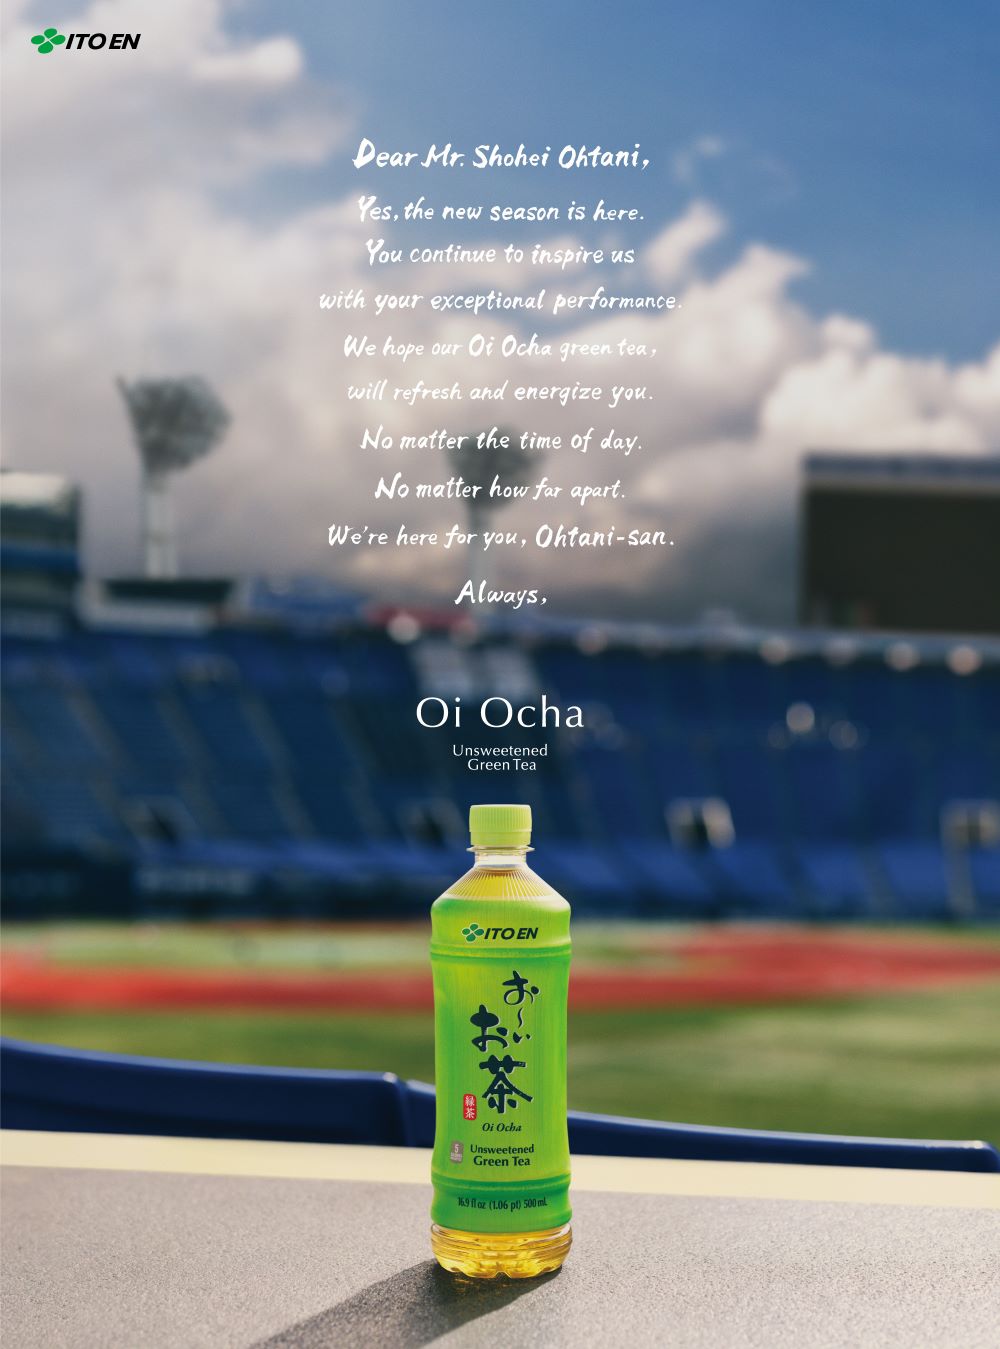 ข่าวภาษาอังกฤษ - Shohei Ohtani Signs Global Partnership with ITO EN's Green Tea Brand "Oi Ocha"